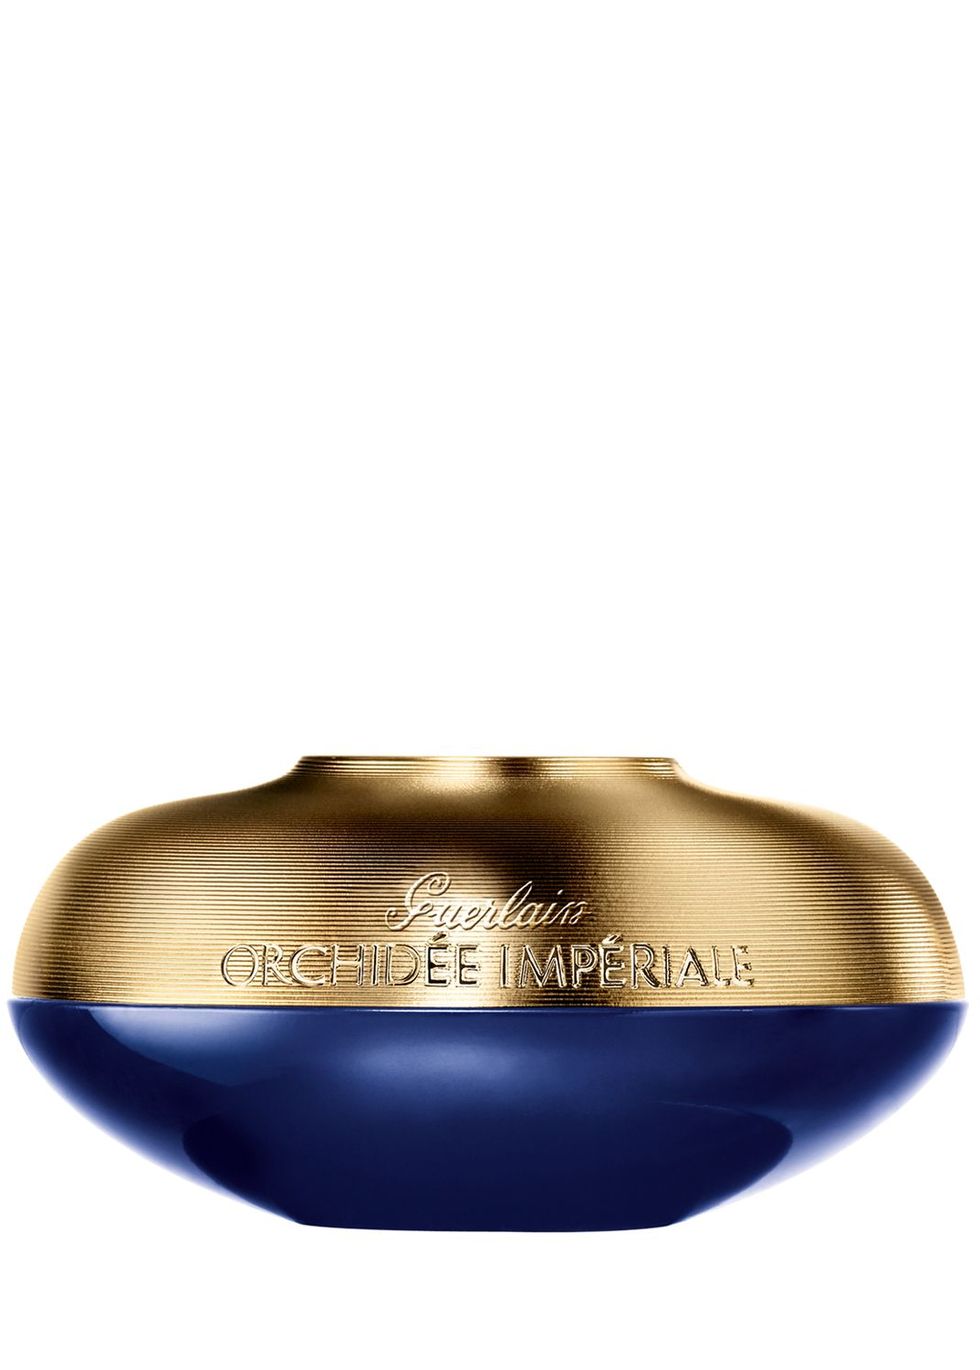 Orchidée Impériale Anti-Aging Eye & Lip Contour Cream 